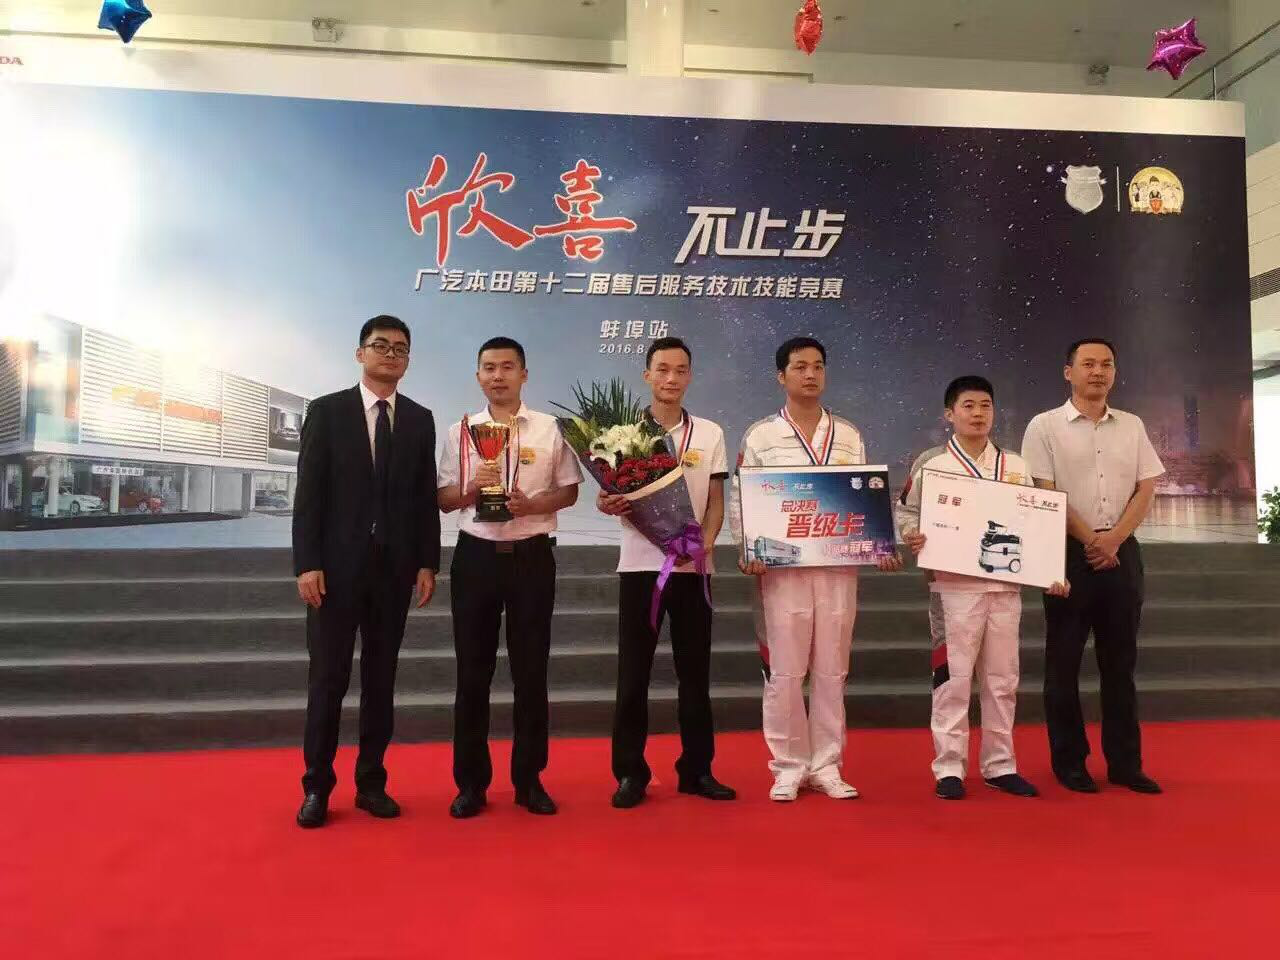 热烈祝贺郑州北环店在售后服务技术技能分站竞赛中得冠